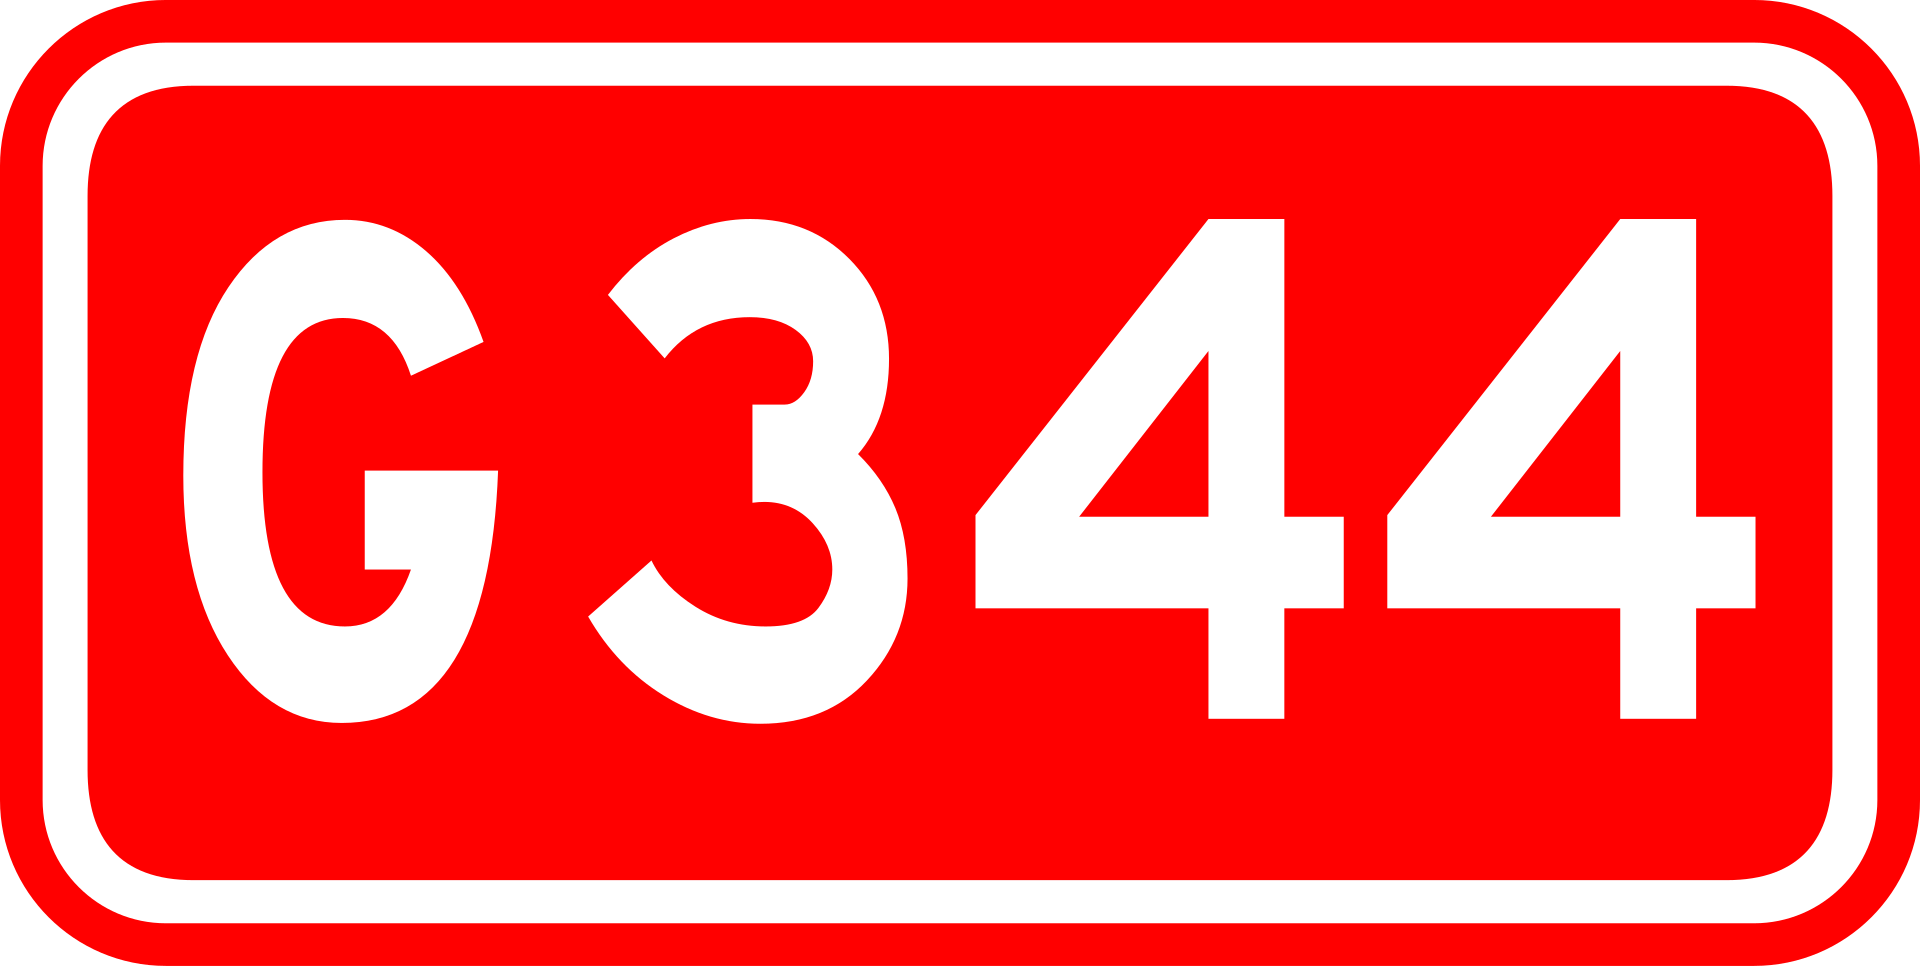 G344